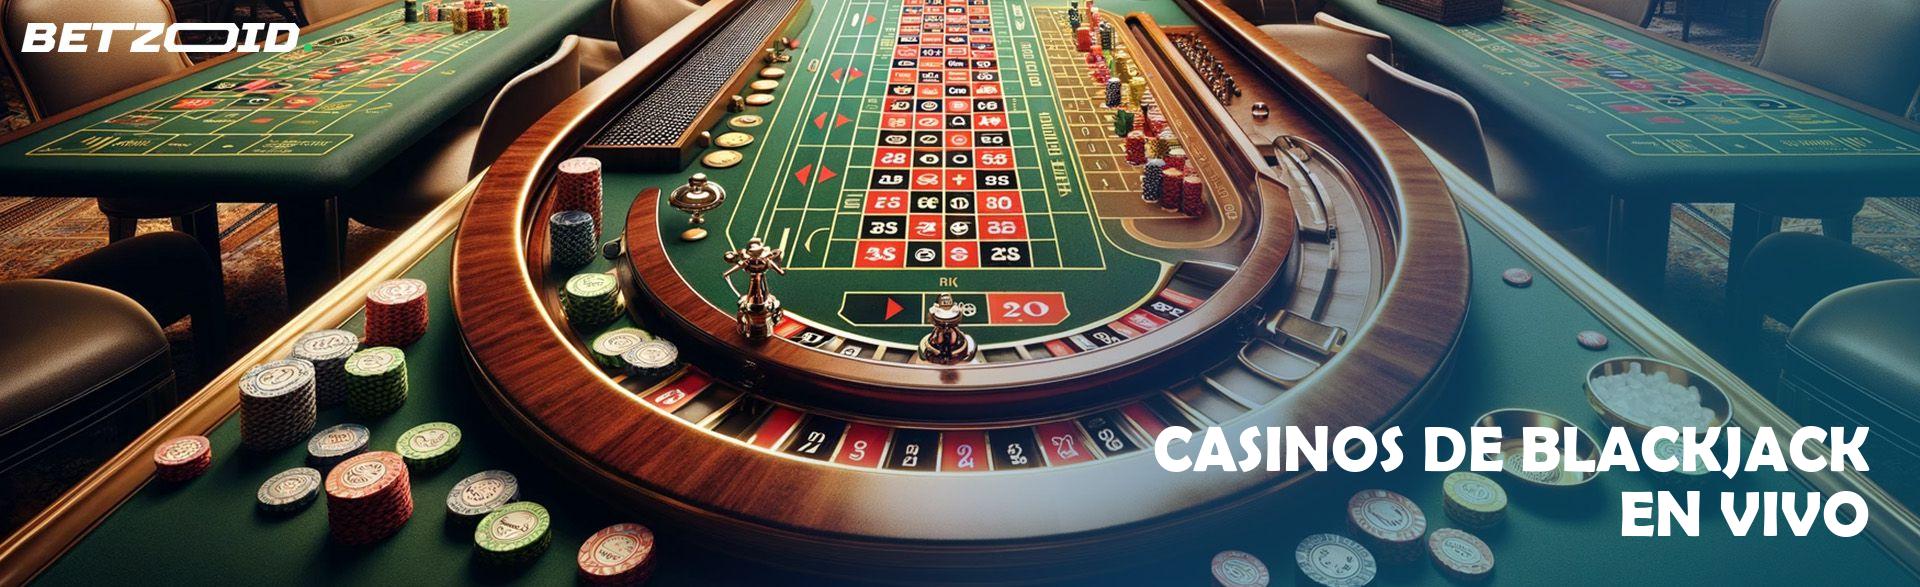 Casinos de Blackjack En Vivo.